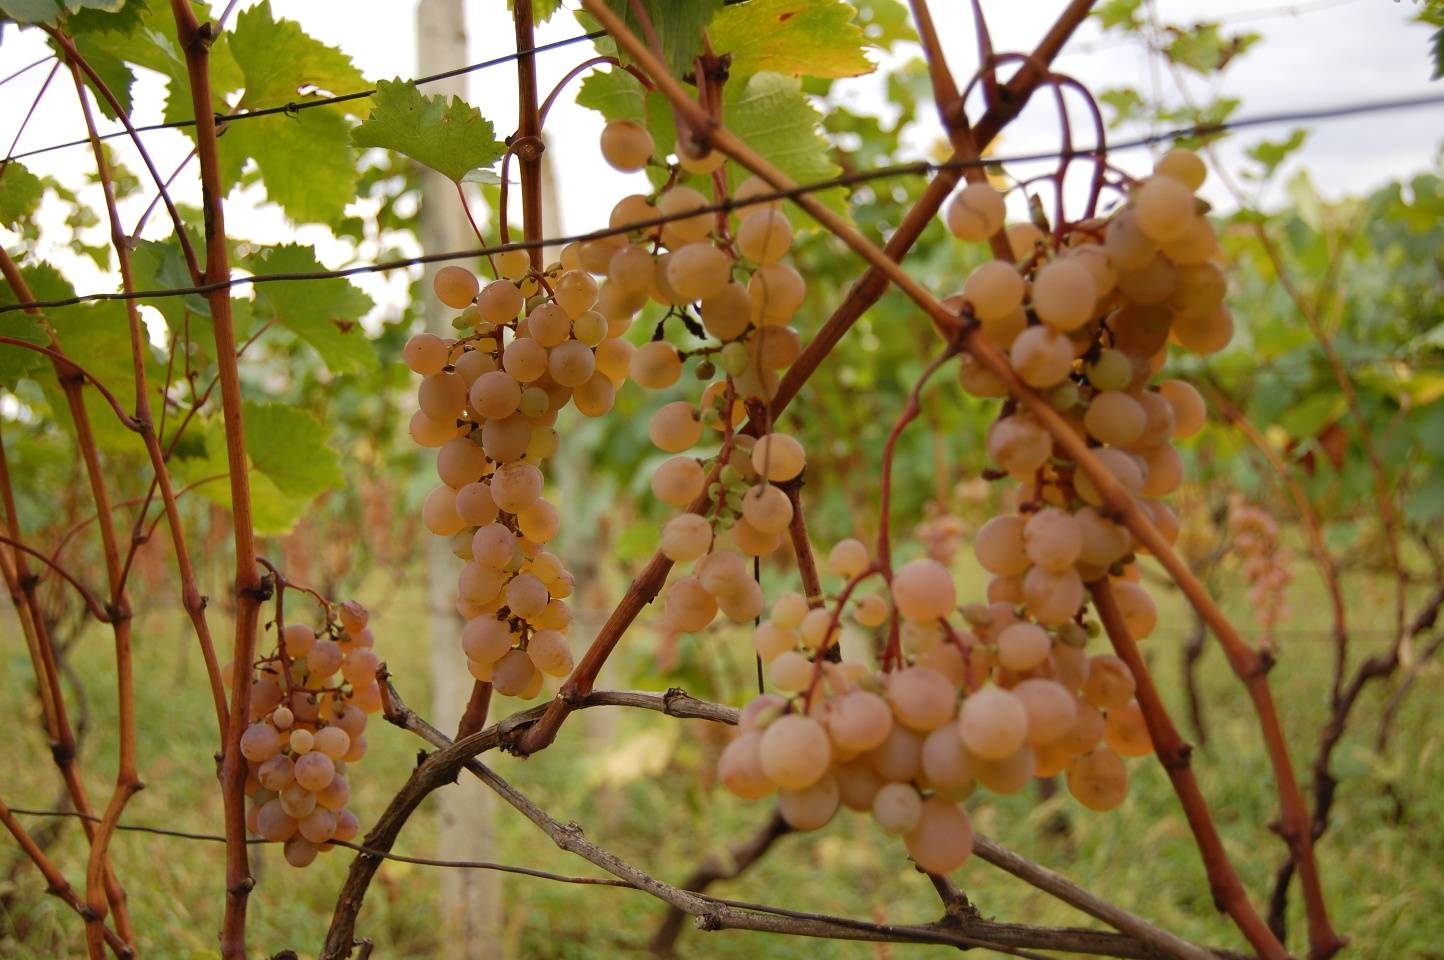 Сорт винограда хасанский сладкий фото и описание